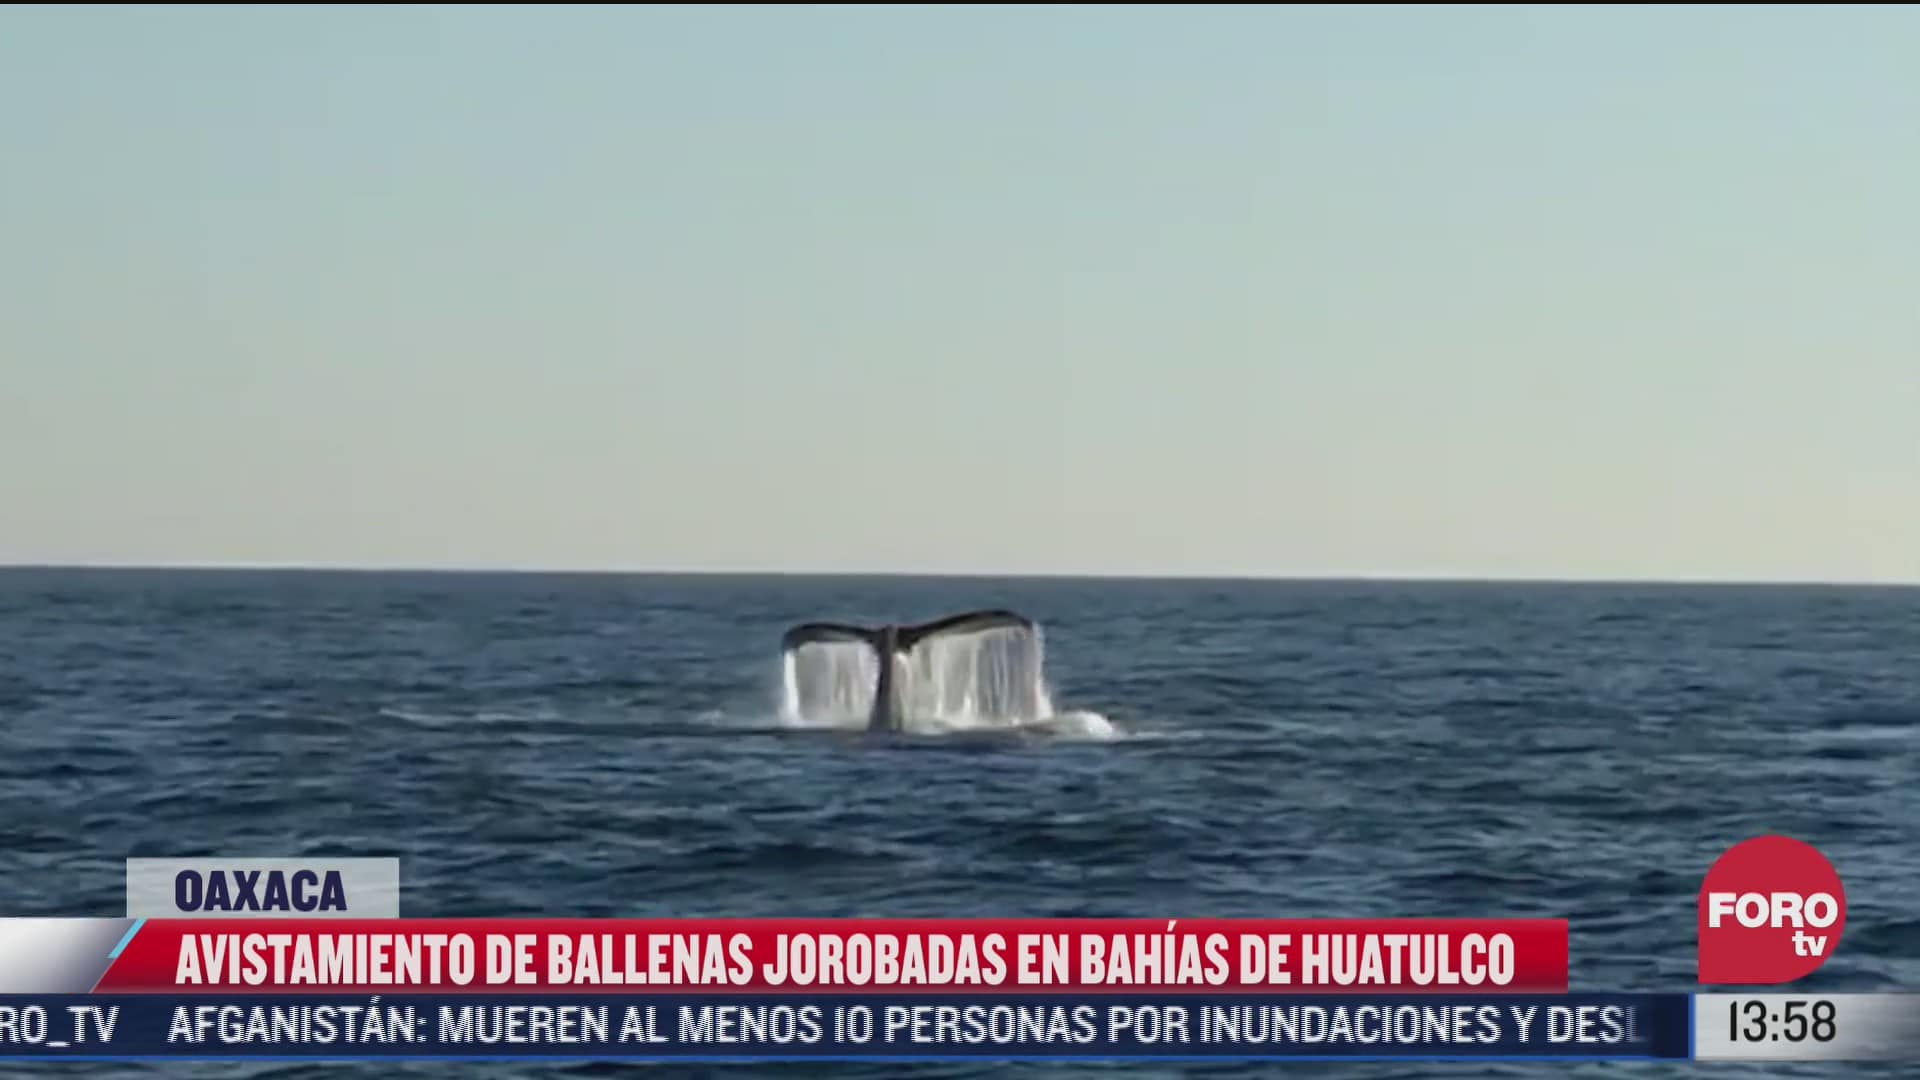 captan ballenas en bahias de huatulco oaxaca